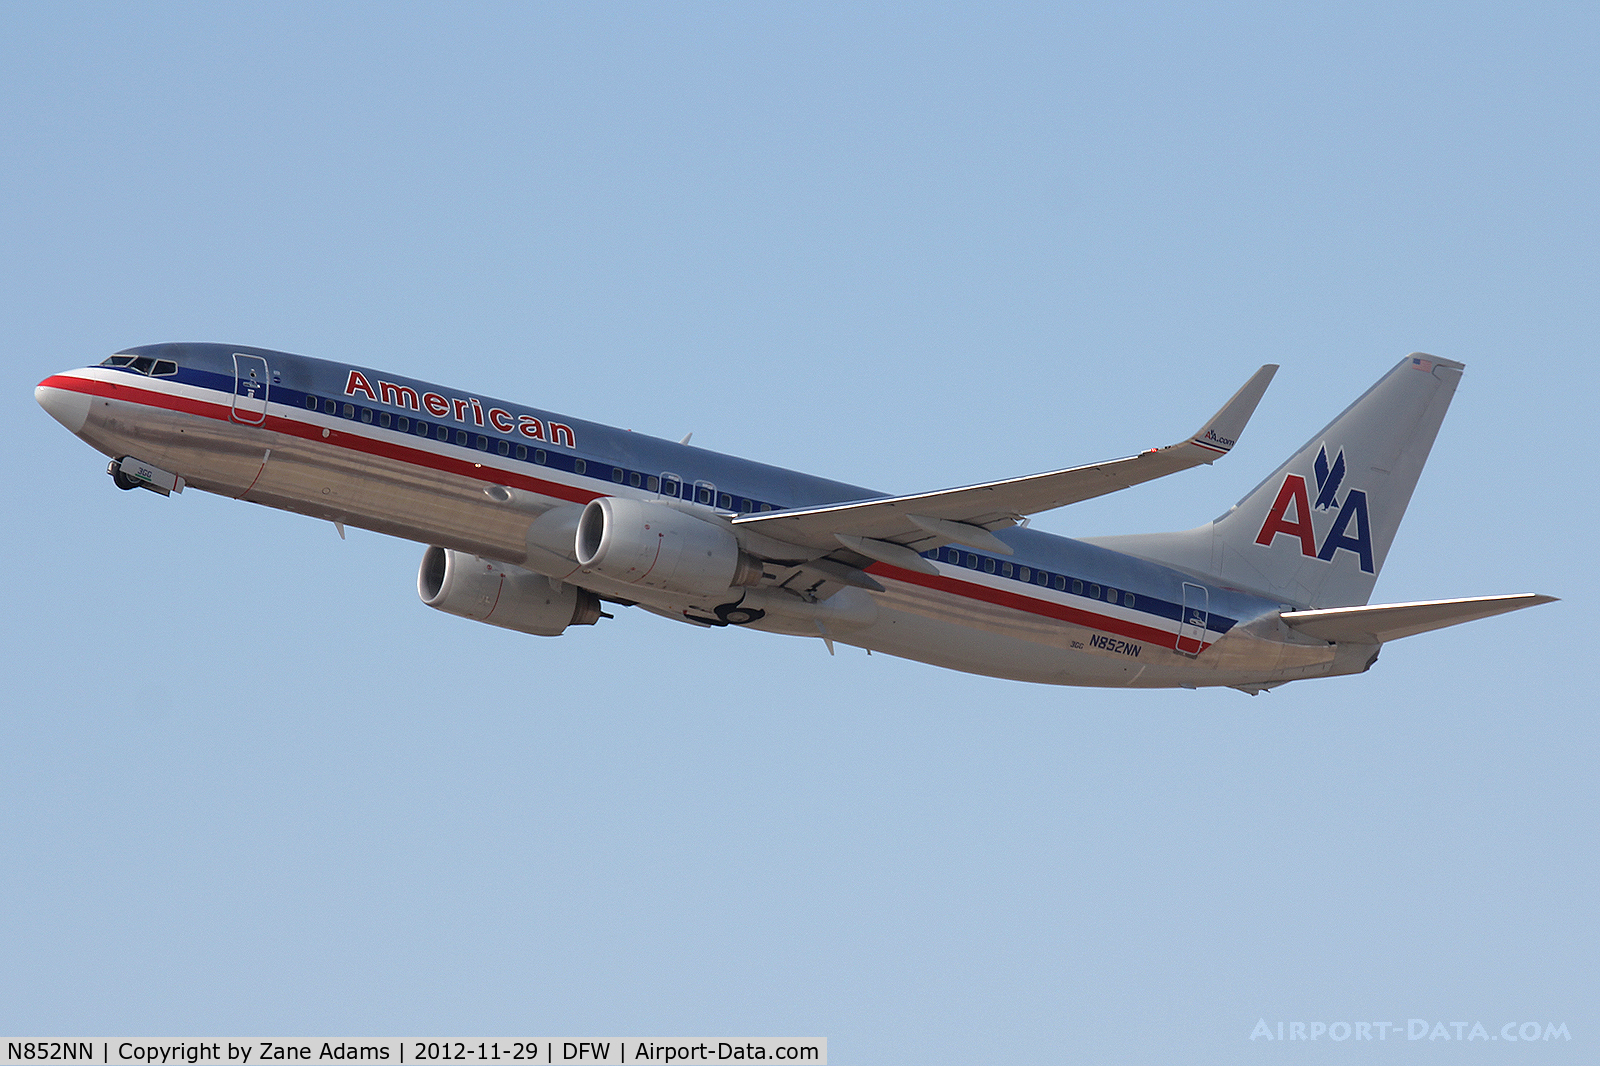 N852NN, 2010 Boeing 737-823 C/N 40581, American Airlines departing DFW Airport